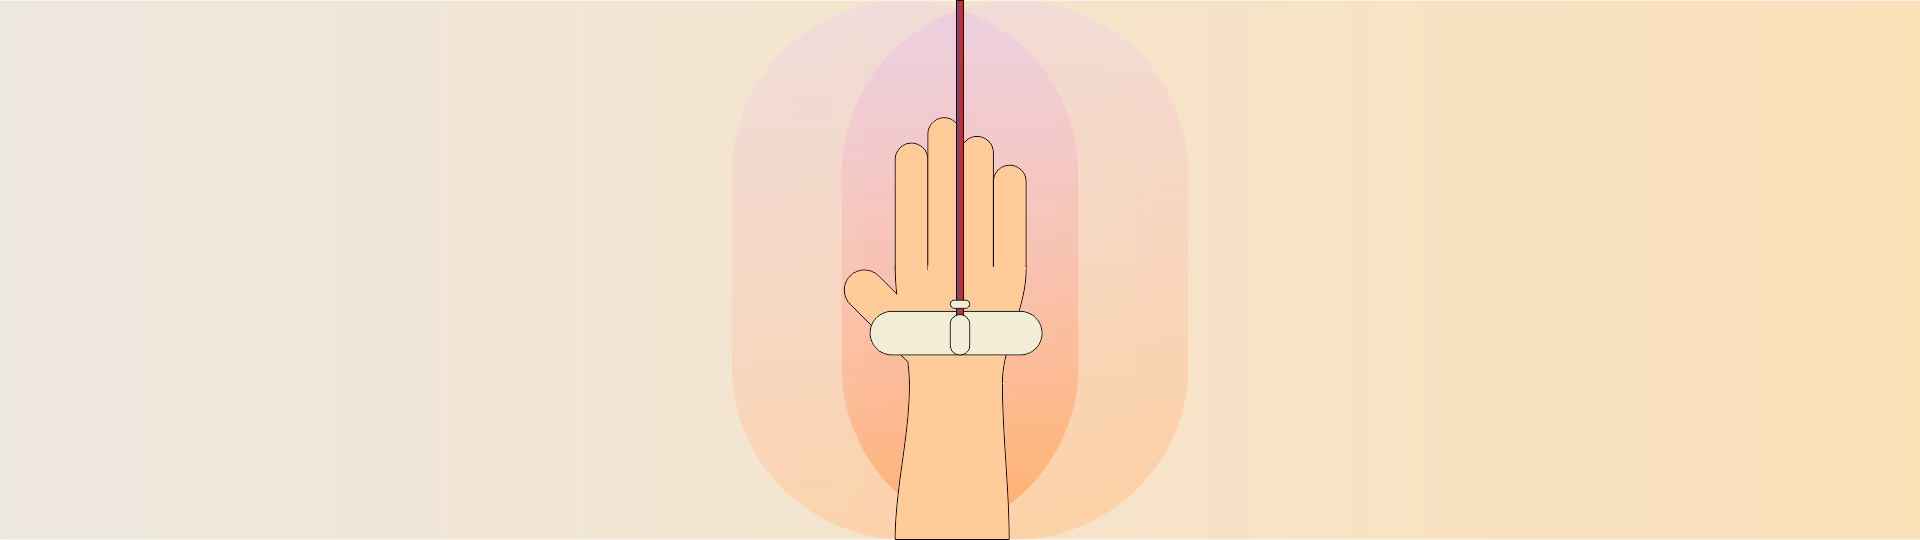 Ilustração de um acesso vascular no pulso de uma mão.